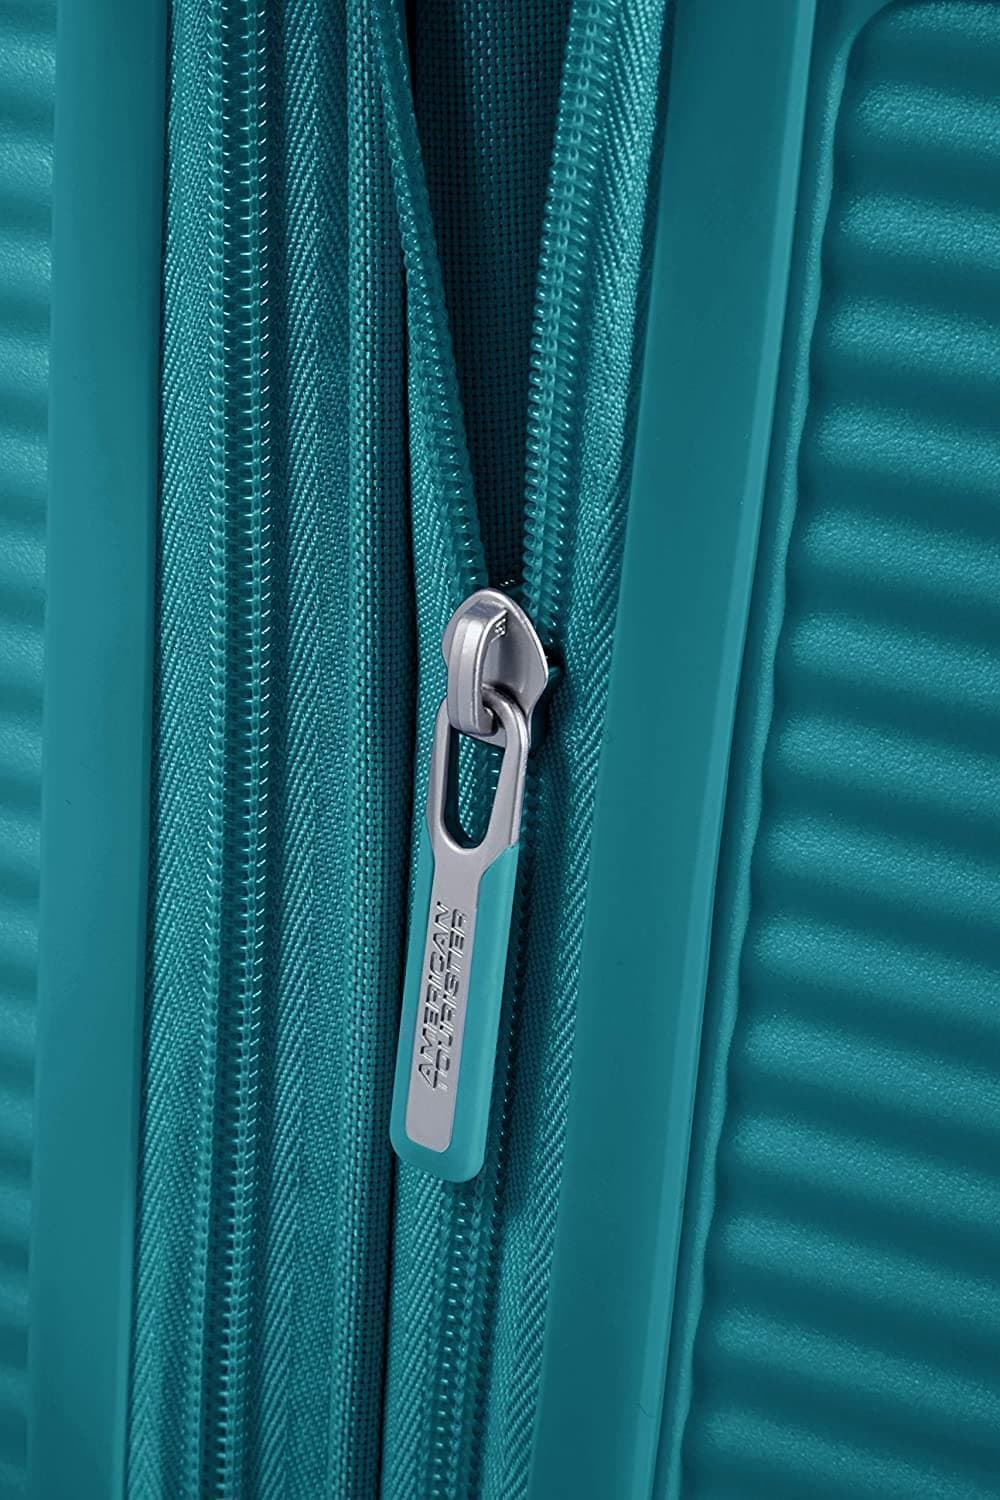 American Tourister Soundbox maleta cabina expandible Verde Jade 3 años de garantia - Imagen 6